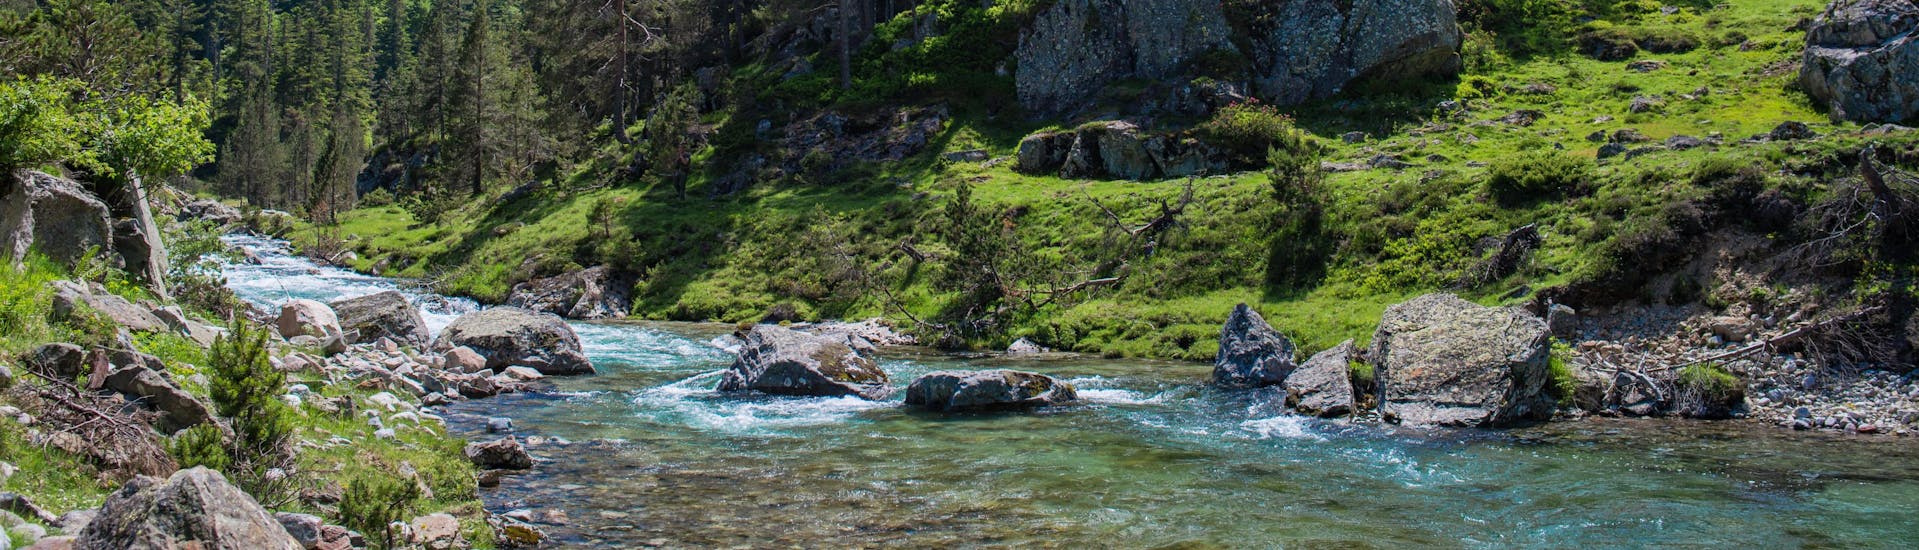 Une rivière coule au milieu d'un paysage verdoyant au milieu des Pyrénées, une destination prisées pour le rafting en France.